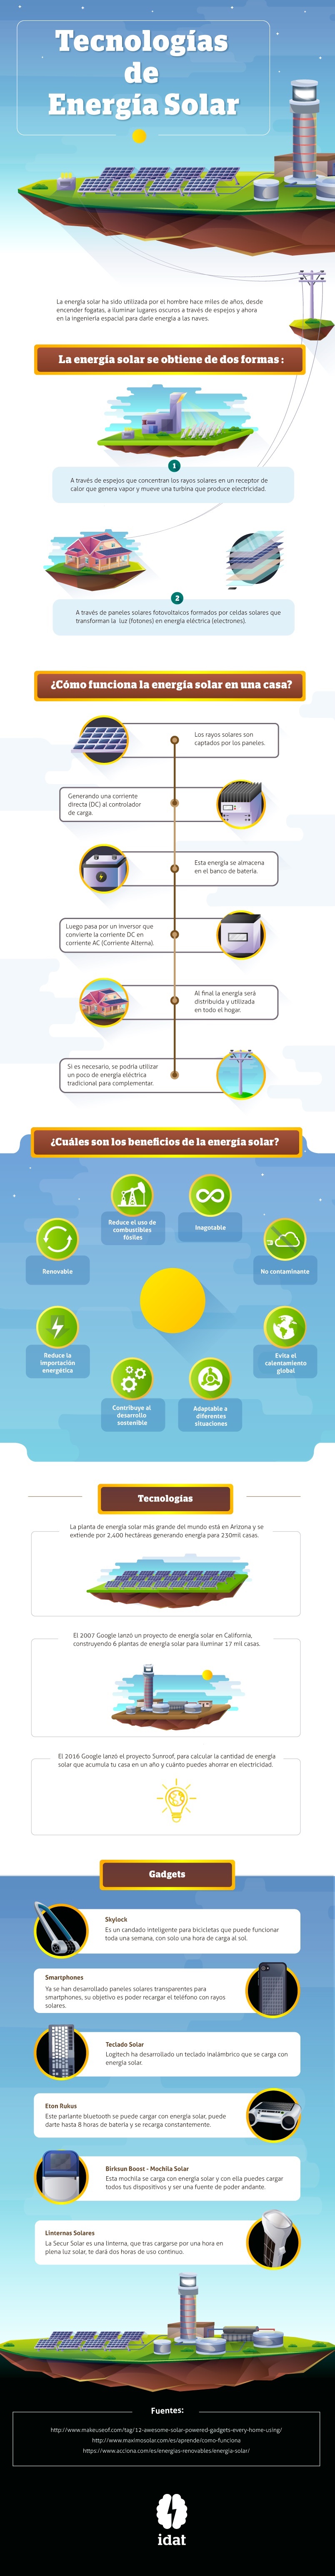 Infografia energia solar